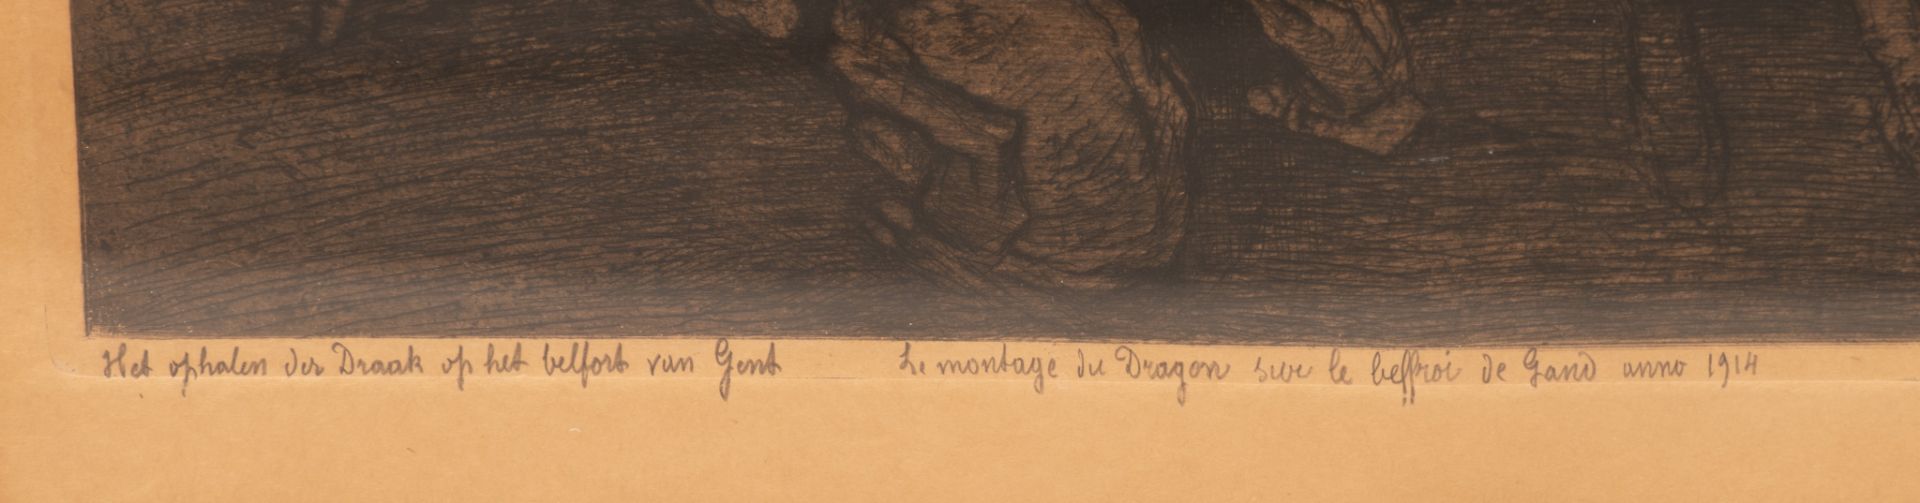 Jules De Bruycker (1870-1945), 'Het ophalen des draak op het belfort van Gent anno 1914', 1927, etch - Image 5 of 8